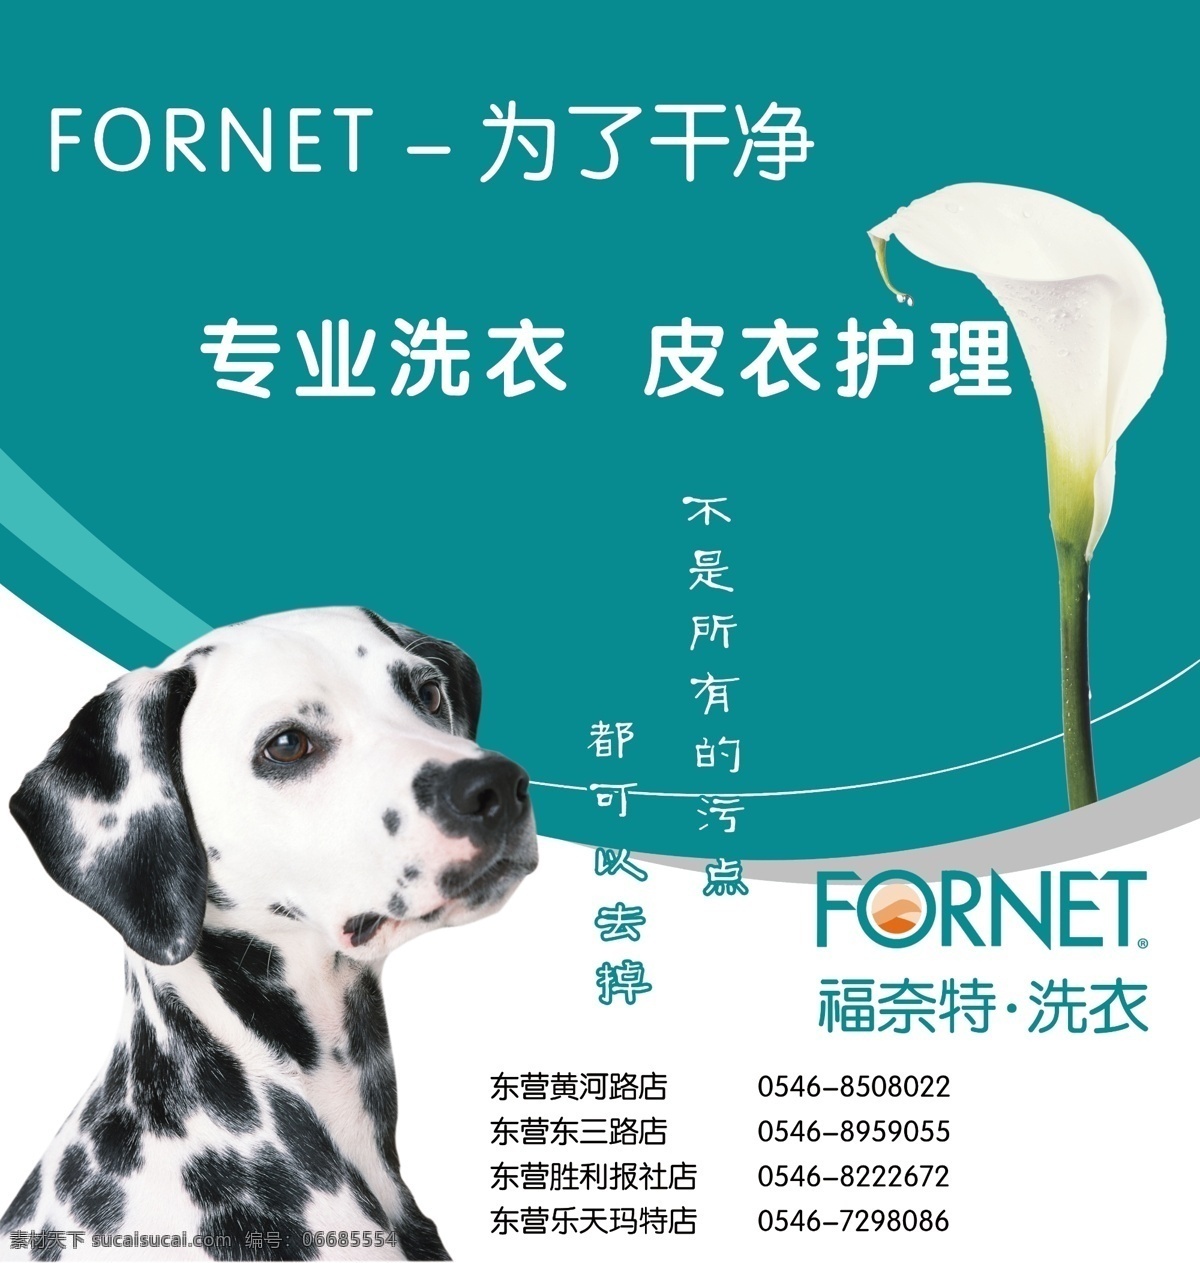 福奈特 宣传海报 斑点狗 马蹄莲 福奈特标志 蓝色背景 广告设计模板 源文件